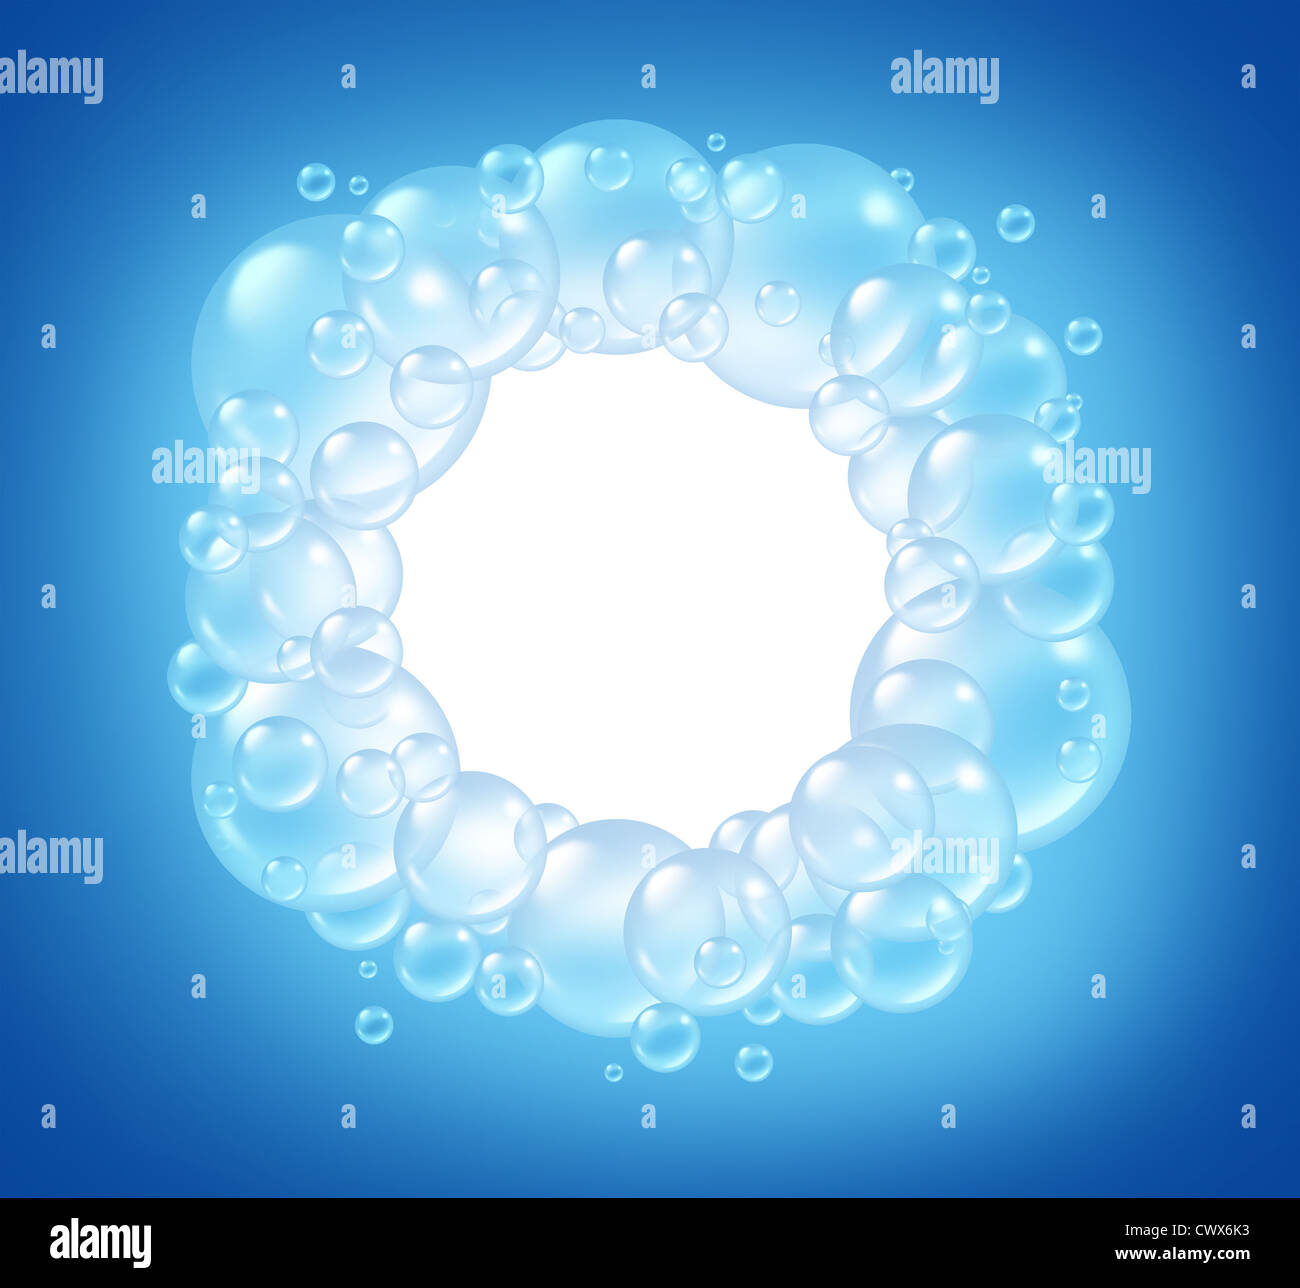 Bolle cerchio vuoto in acqua pulita e trasparente sud soap bubble composizione con una schiuma di sapone in molti formati circolari in aria floating come pulire i simboli blu di lavaggio e freschezza. Foto Stock